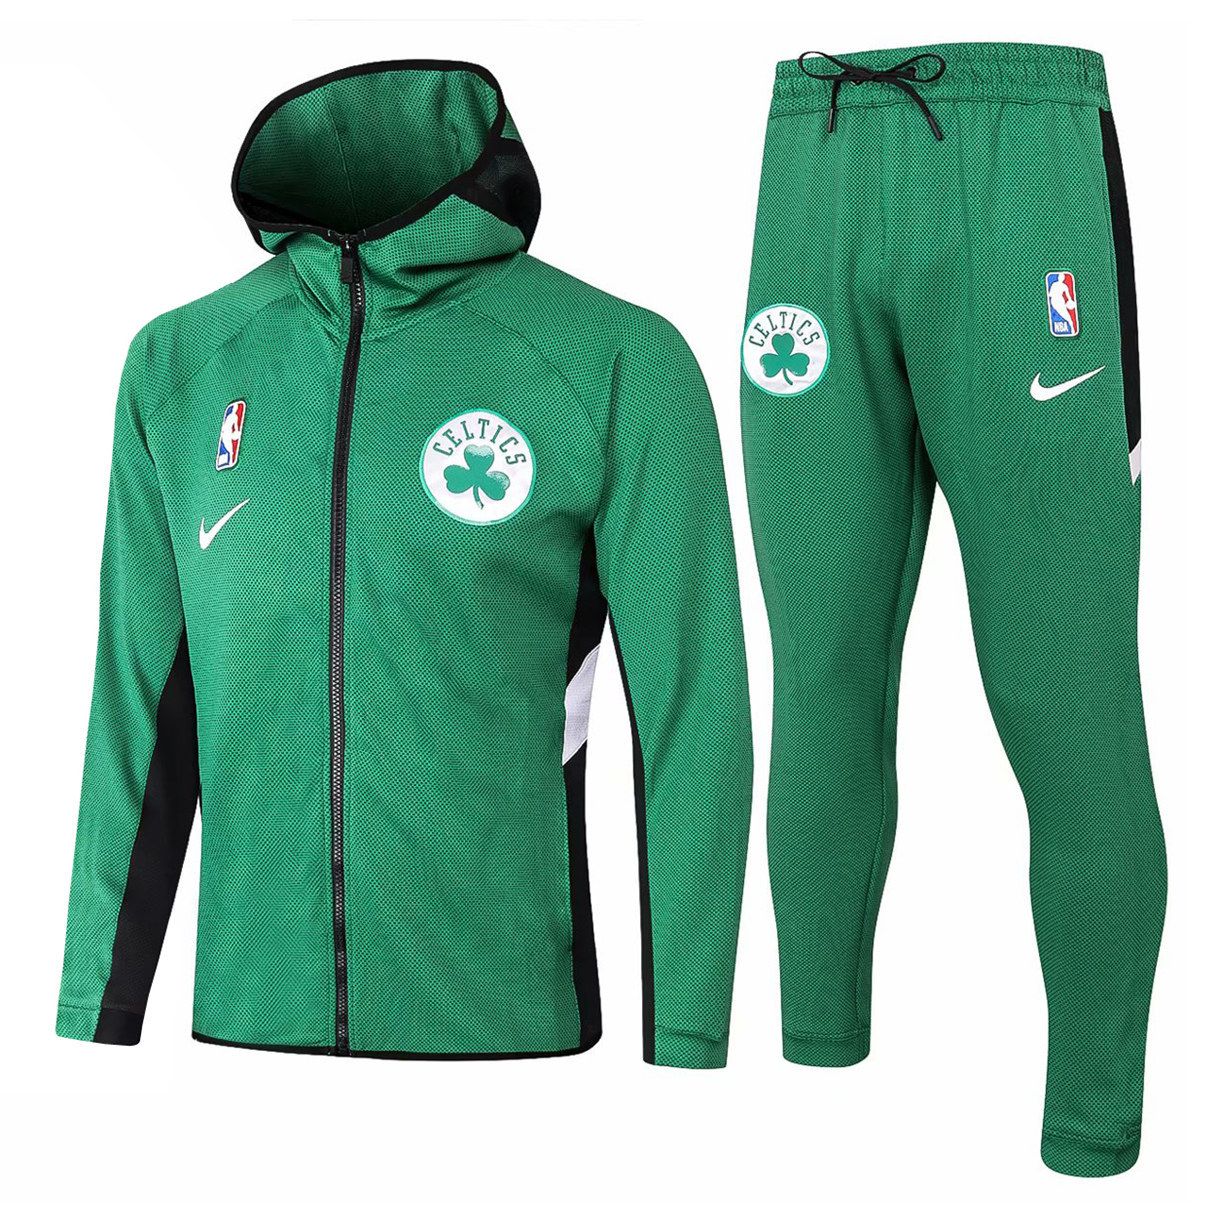 US$ 49.80 - Mens Boston Celtics Hoodie Jacket + Pants Training Suit ...